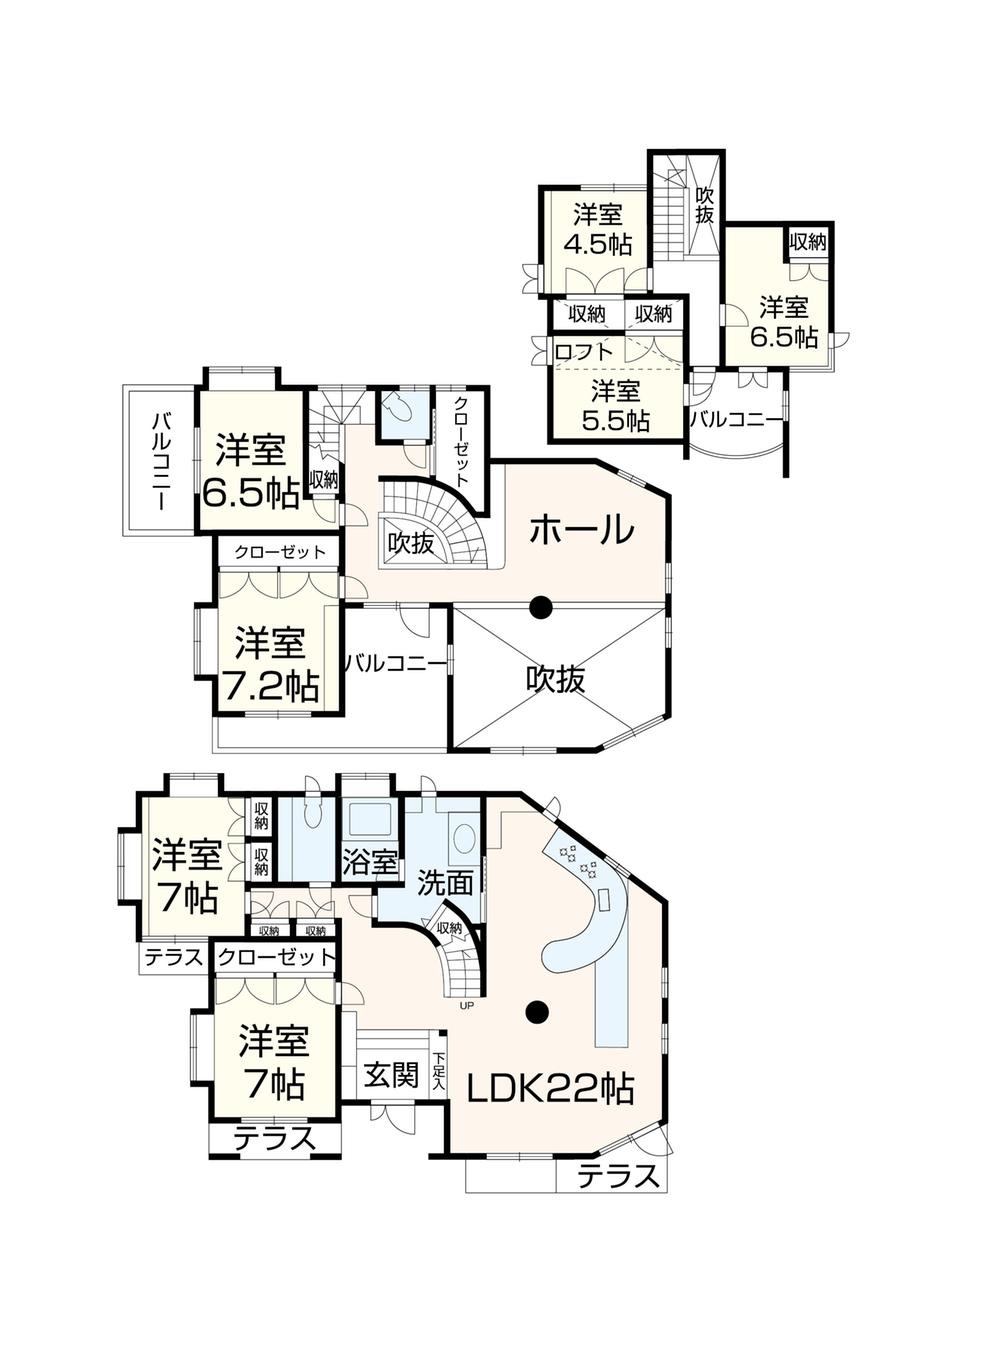 Floor plan. 49,800,000 yen, 7LDK + S (storeroom), Land area 201.17 sq m , Building area 164.12 sq m